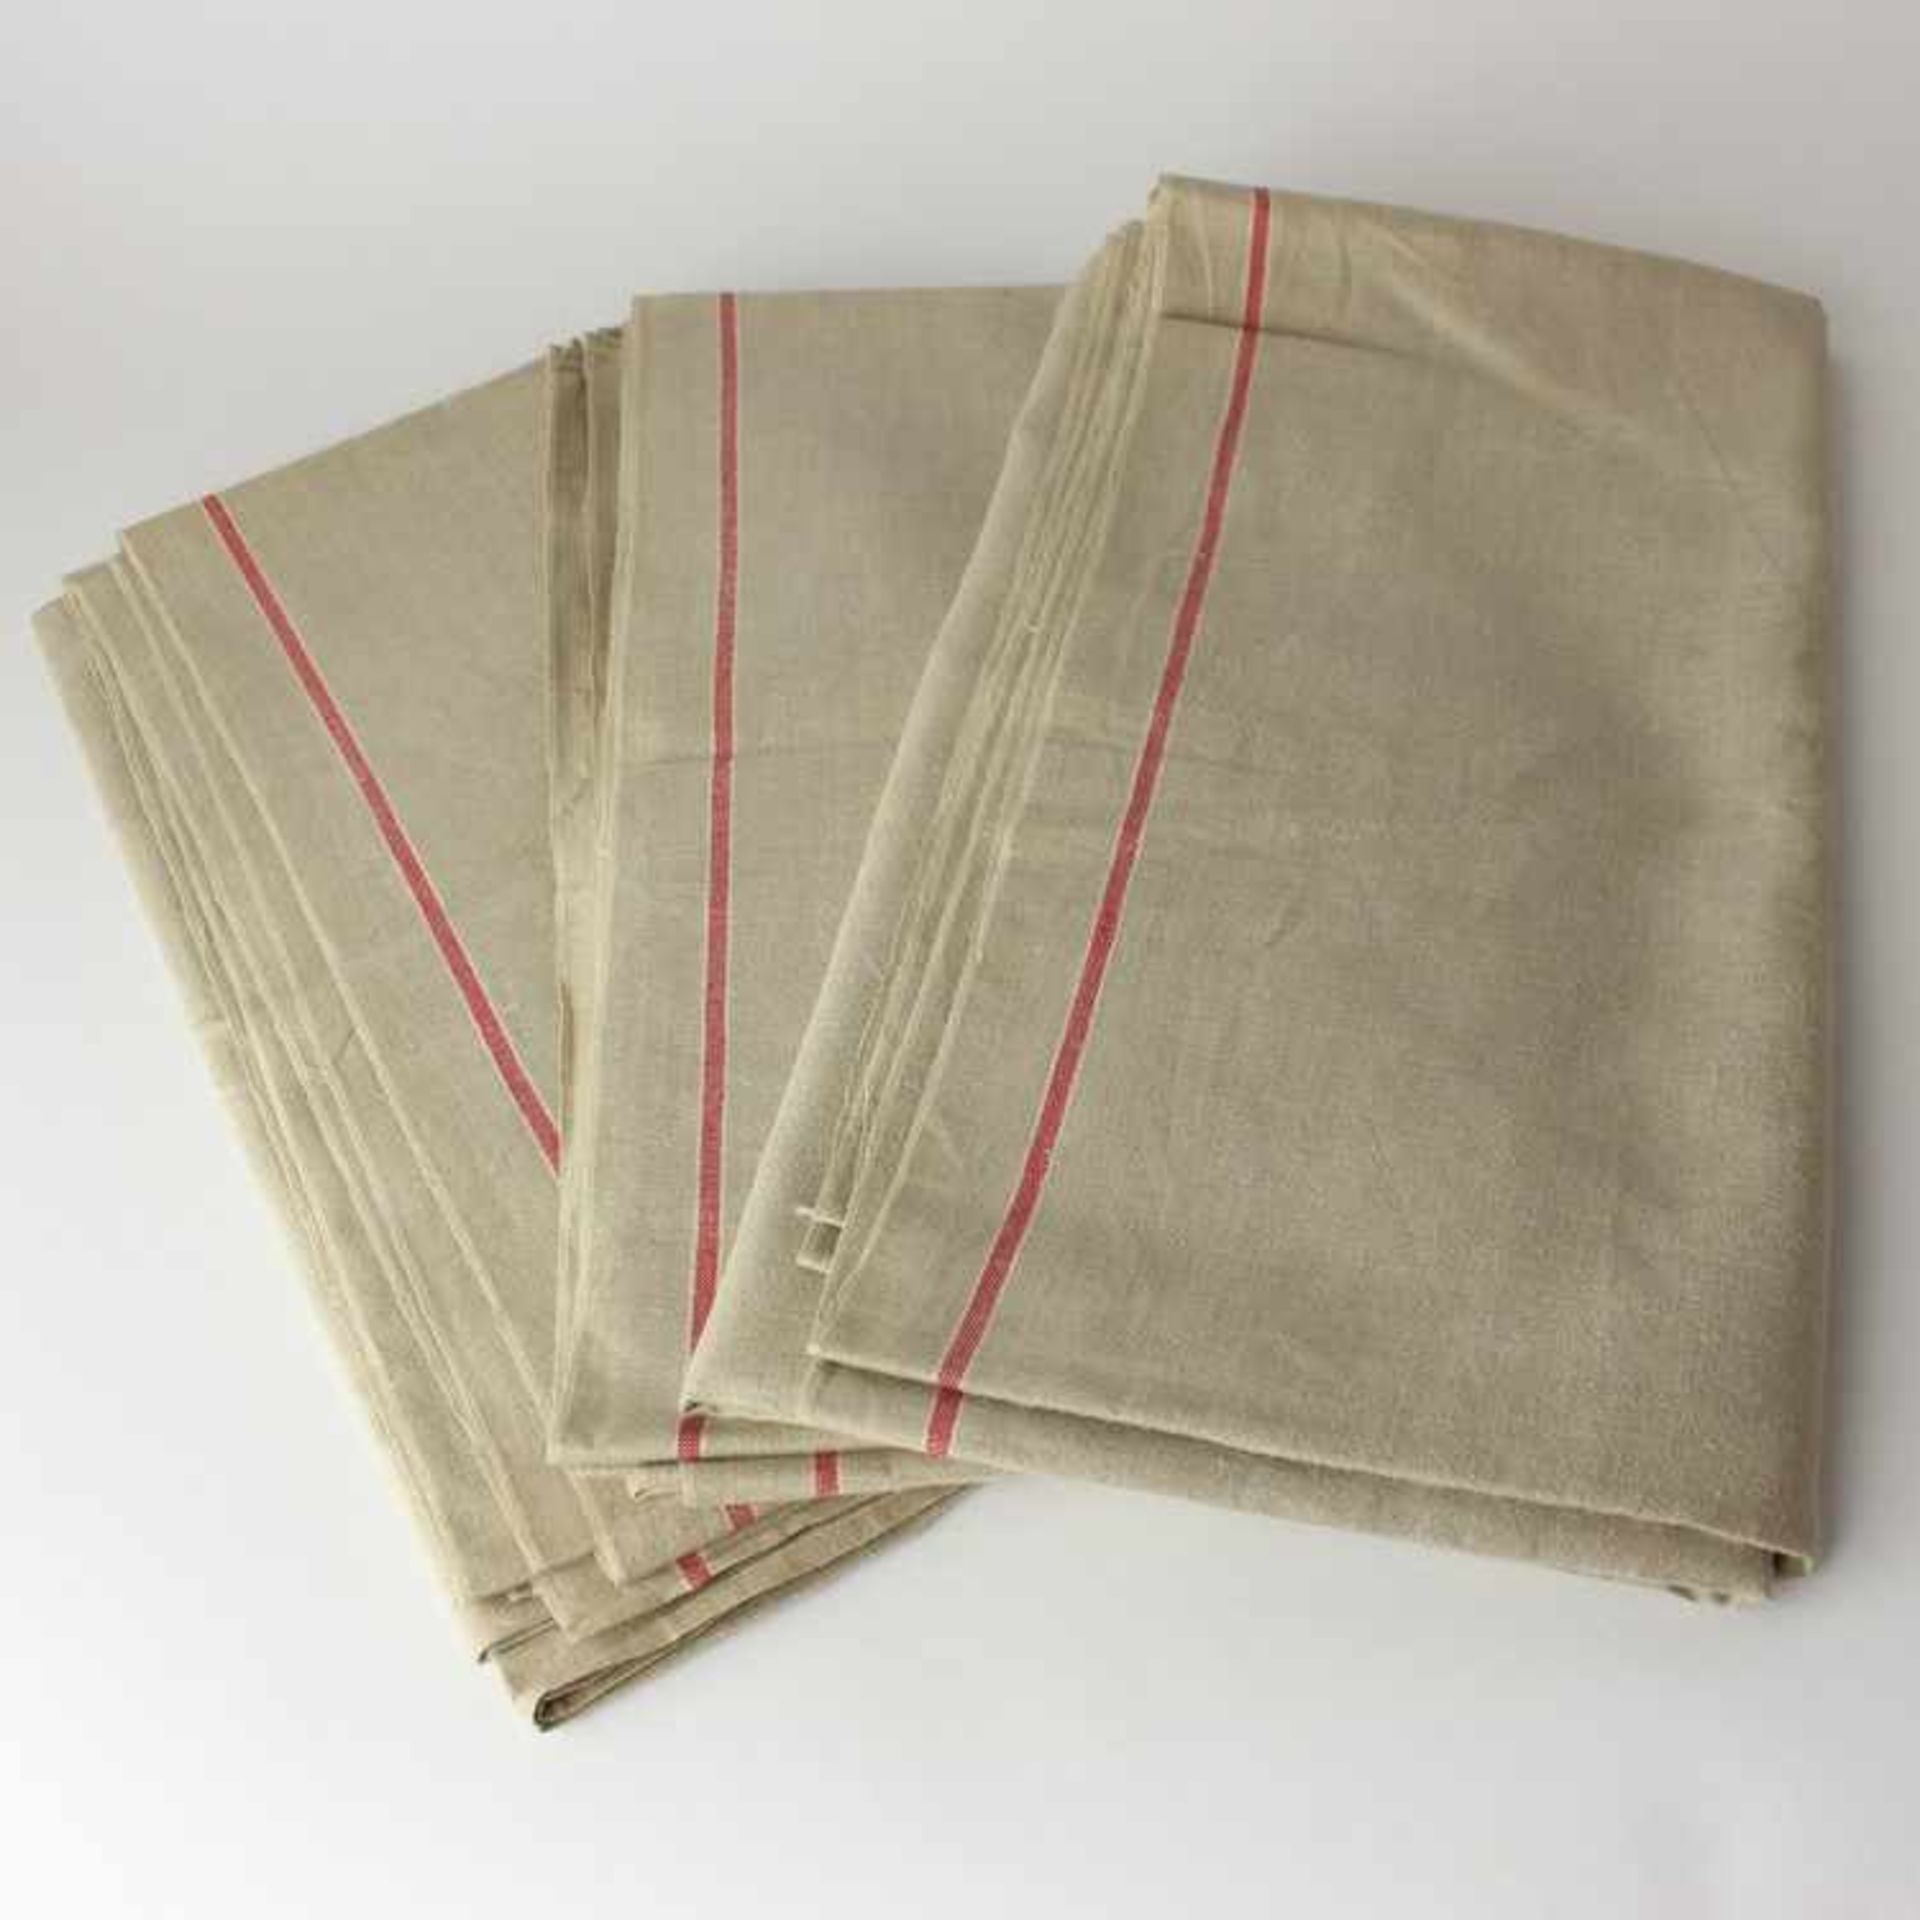 Mangeltücher - Drei Stückum 1930, beiges Leinen, rote Streifen, ungewaschen, ca. 80 x 300 cm